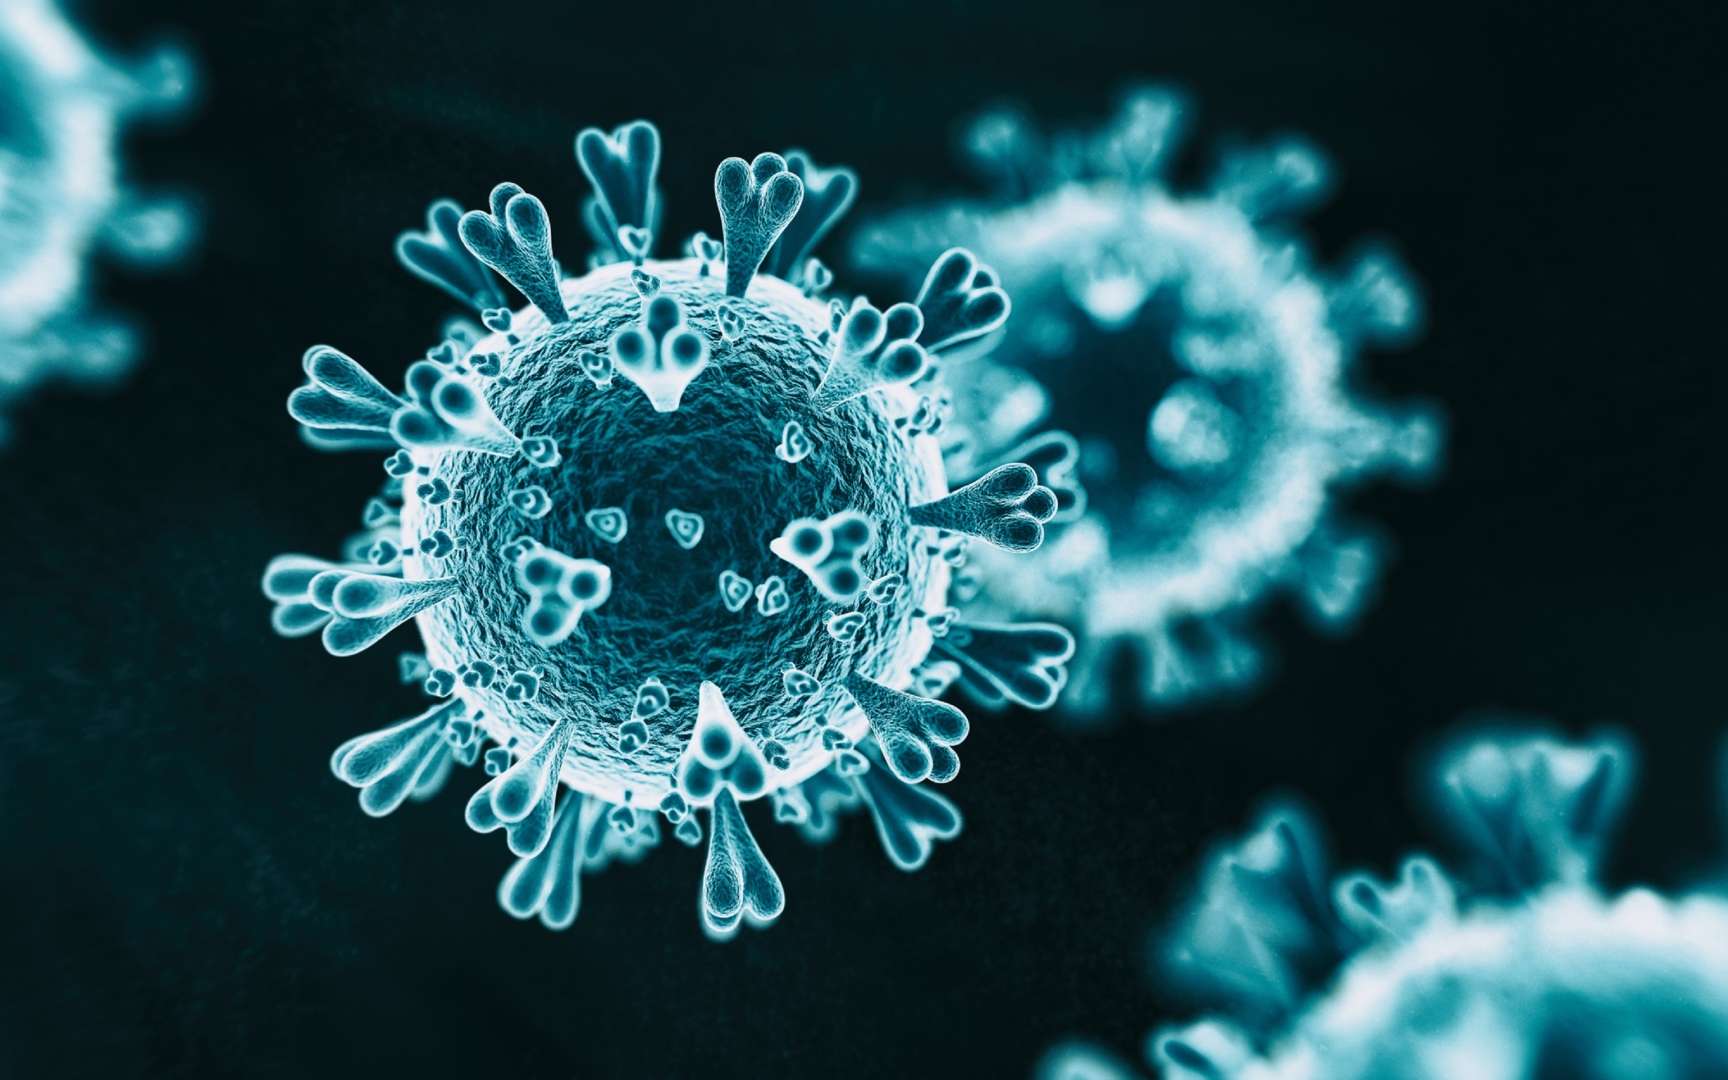 Les virus utilisent des protéines structurellement comparables aux protéines de leur hôte pour mieux les infecter. © koto_feja, IStock.com